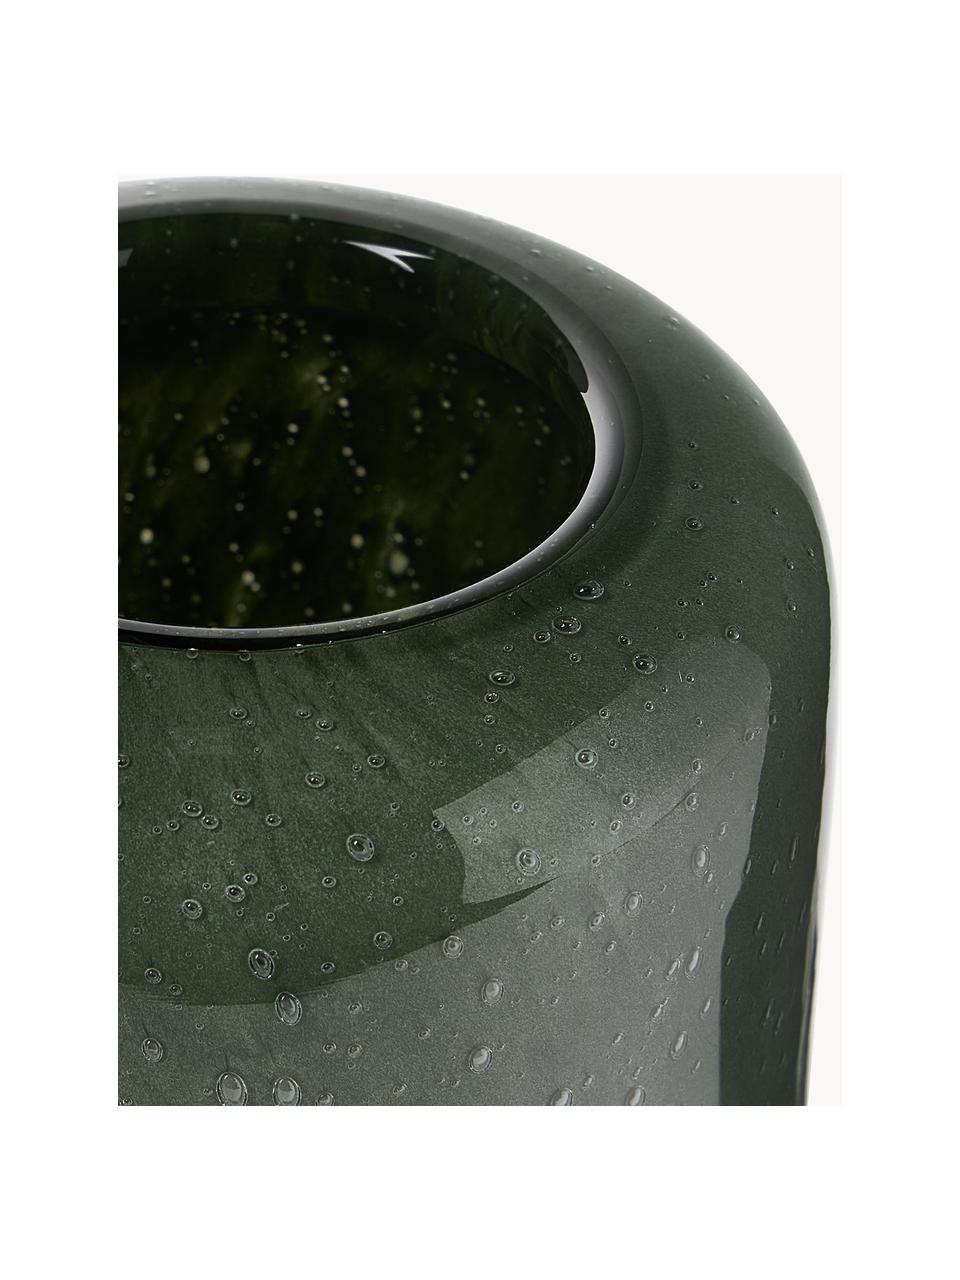 Kleine mondgeblazen vaas Dylla met luchtbellen, H 16, Natronkalkglas, Groen, transparant, Ø 8 x W 16 cm